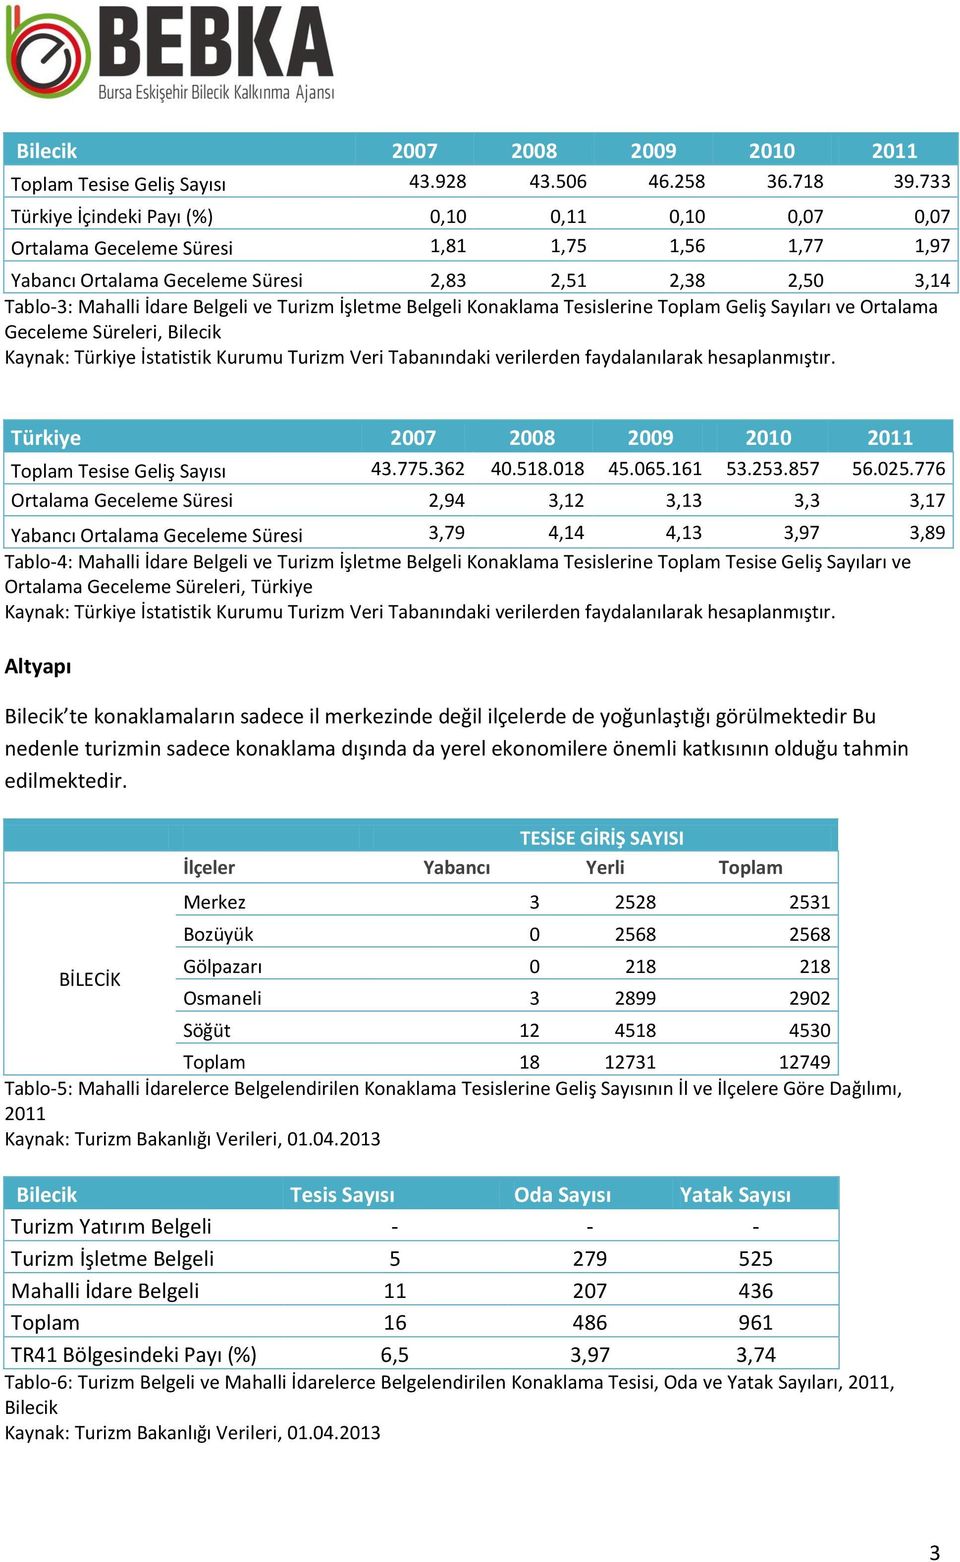 Turizm İşletme Belgeli Konaklama Tesislerine Toplam Geliş Sayıları ve Ortalama Geceleme Süreleri, Kaynak: Türkiye İstatistik Kurumu Turizm Veri Tabanındaki verilerden faydalanılarak hesaplanmıştır.